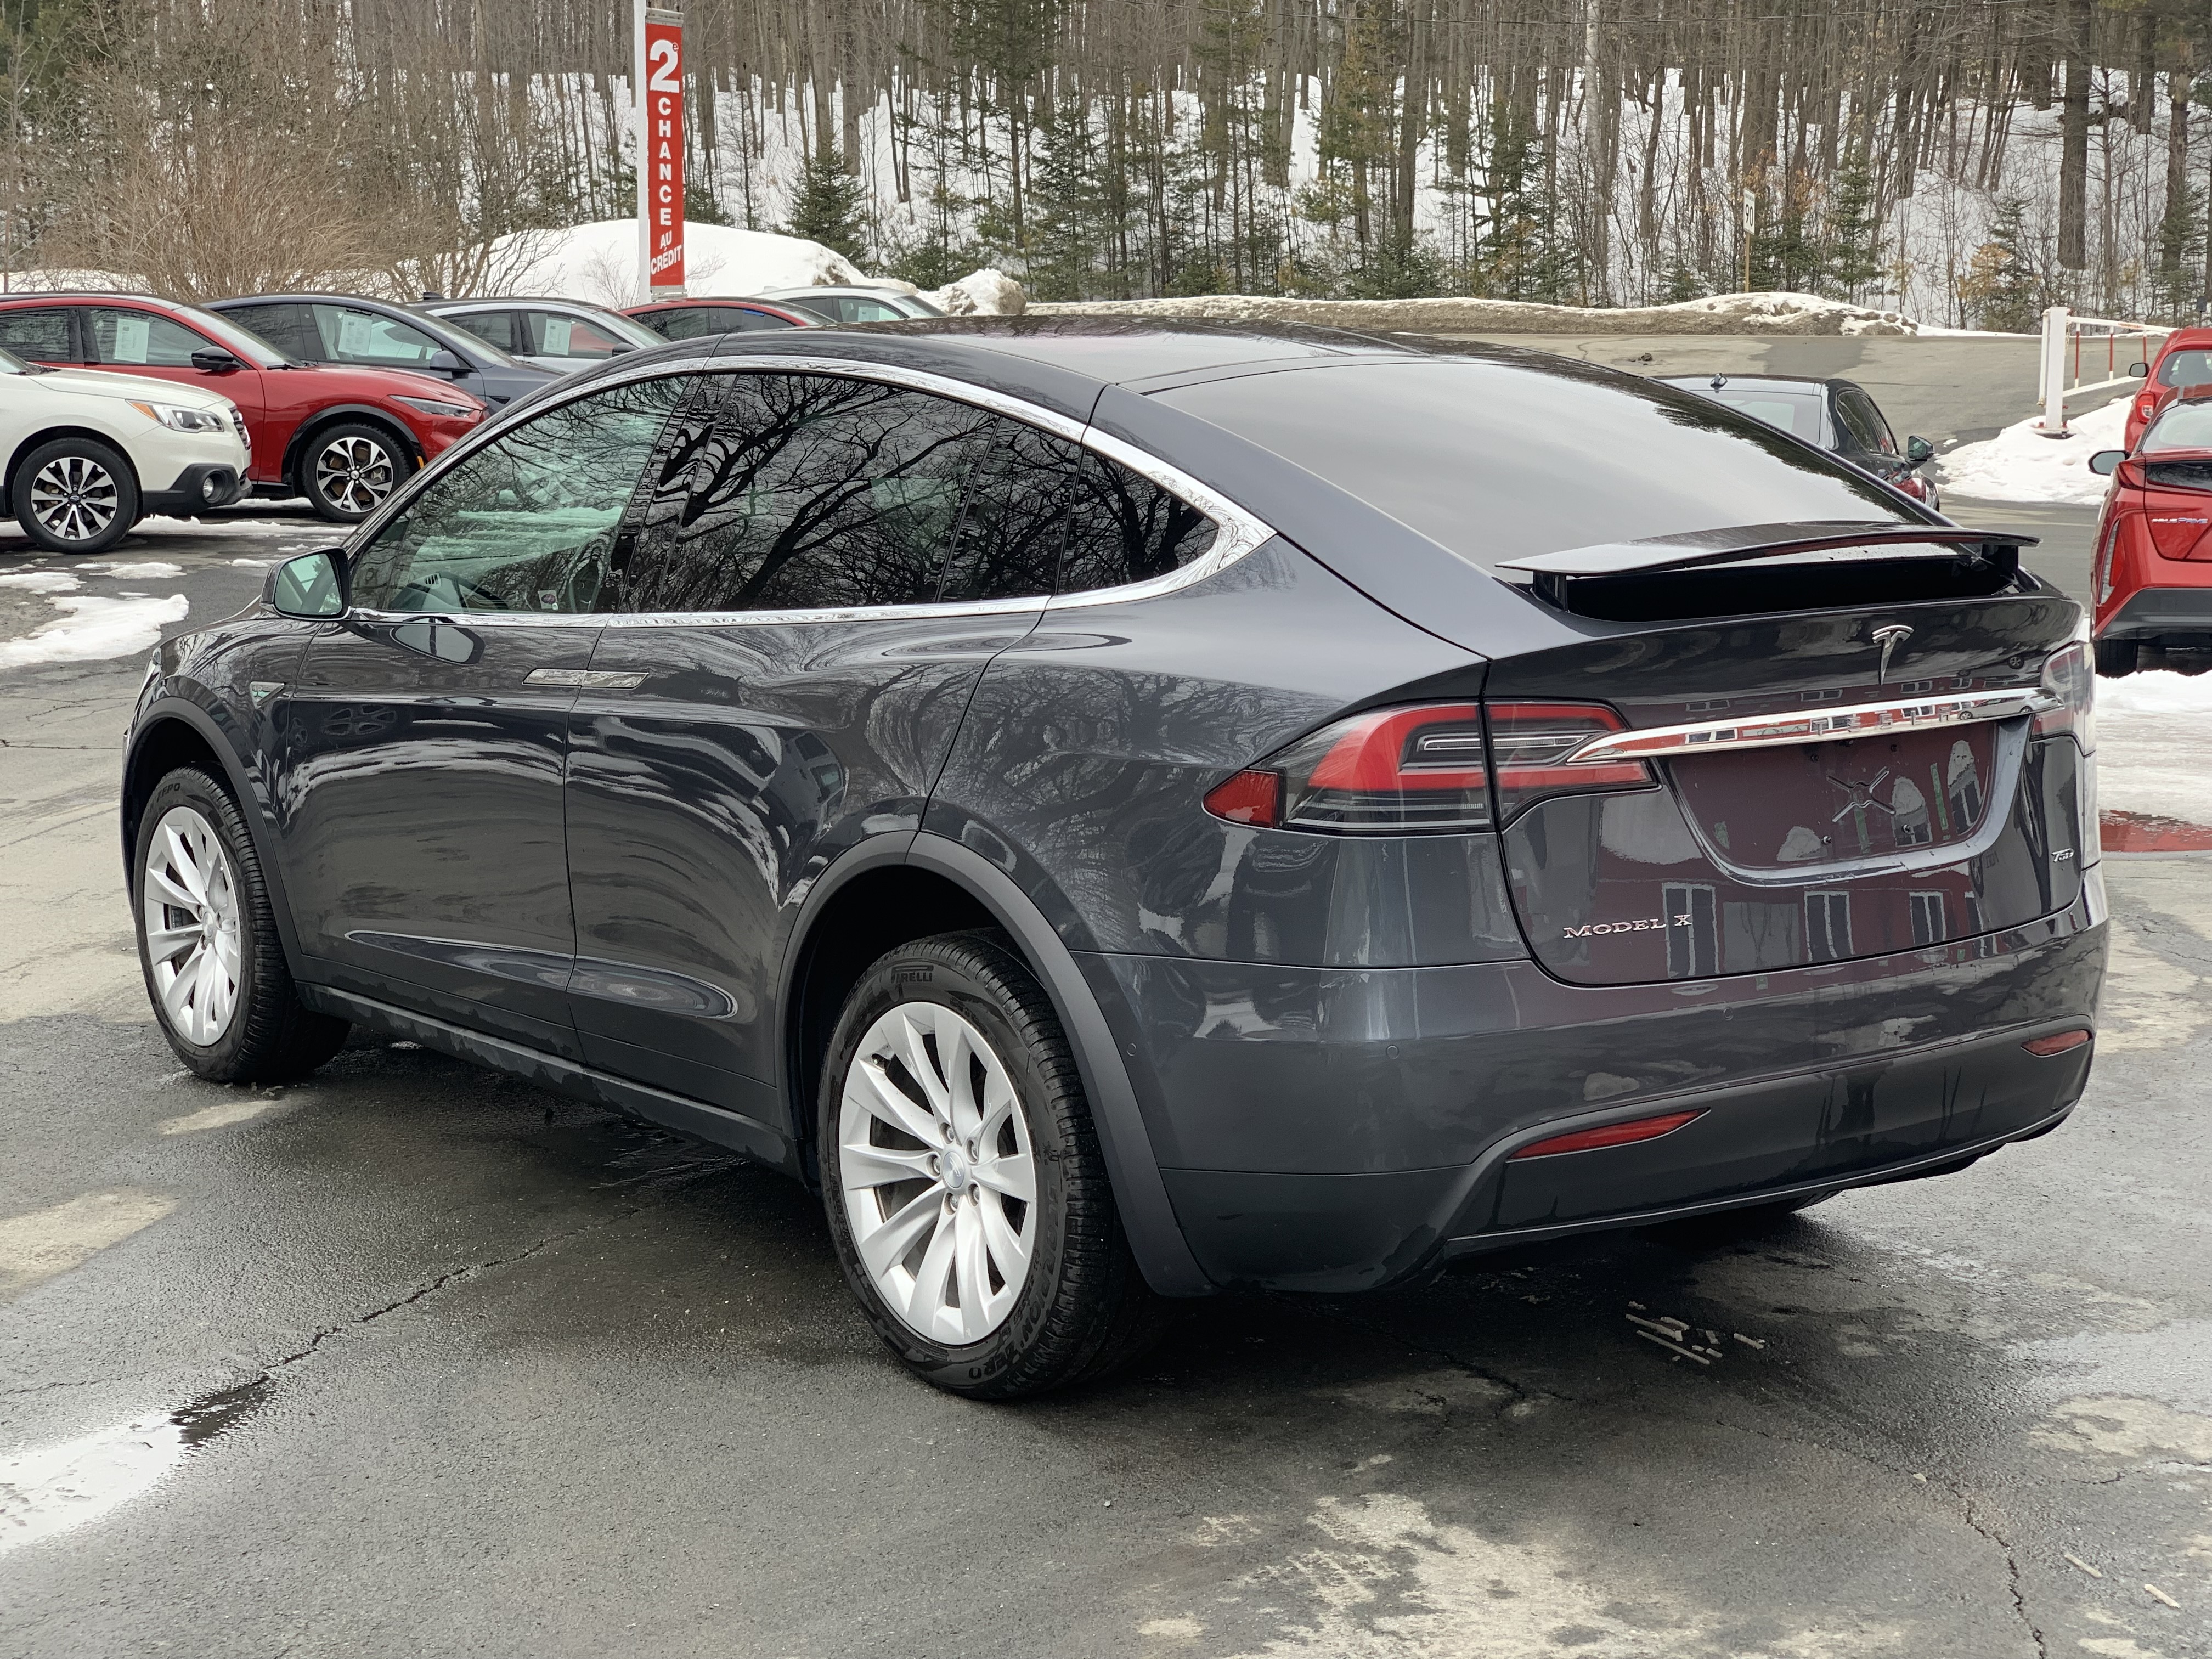 JN auto Tesla Model X75D 6 passagers,Une seule proprio, Garantie prolongée 12 mois/20 000 km incluse, possibilité de surclassement 8608957 2016 Image 5